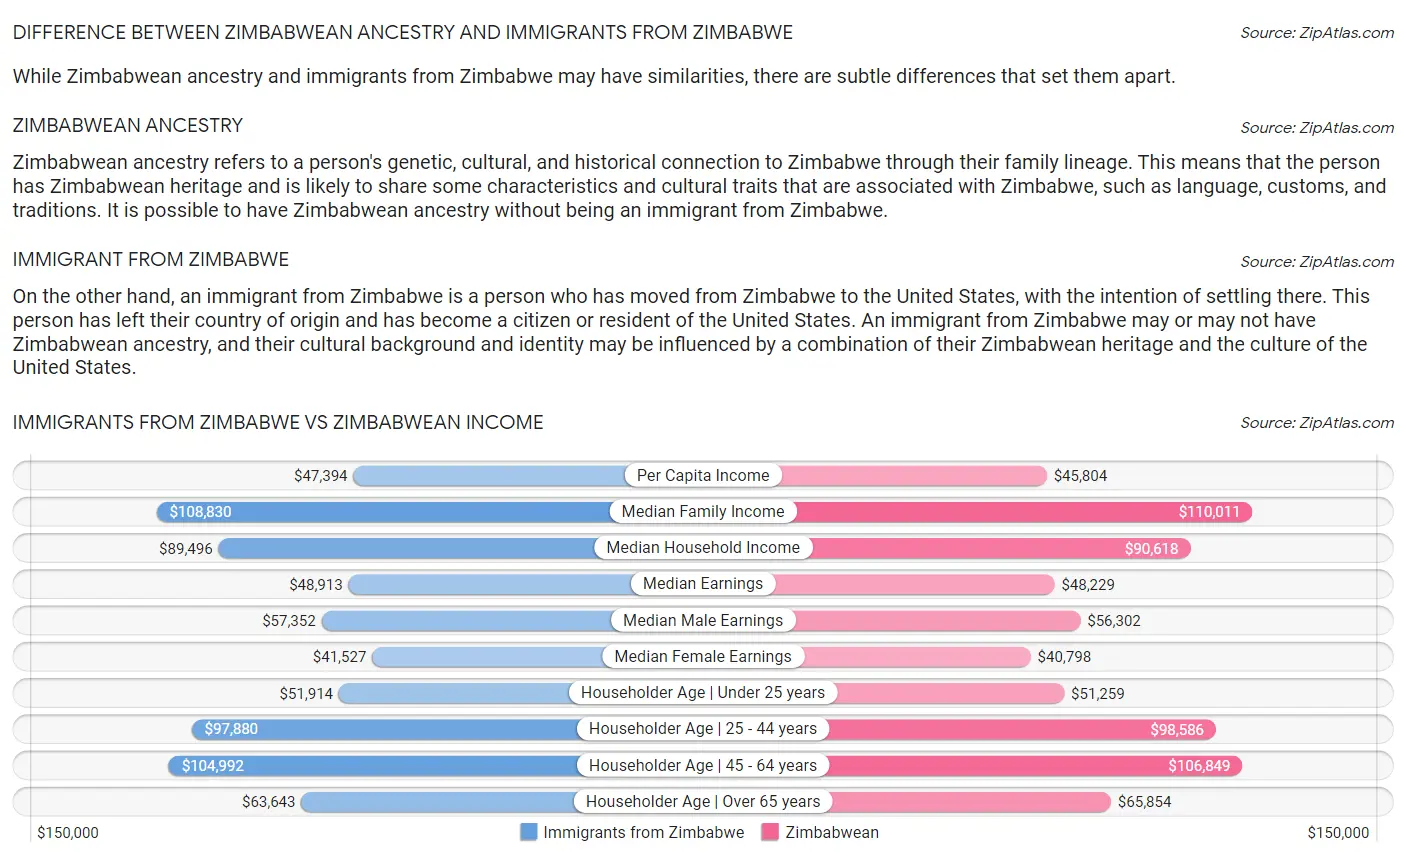 Immigrants from Zimbabwe vs Zimbabwean Income